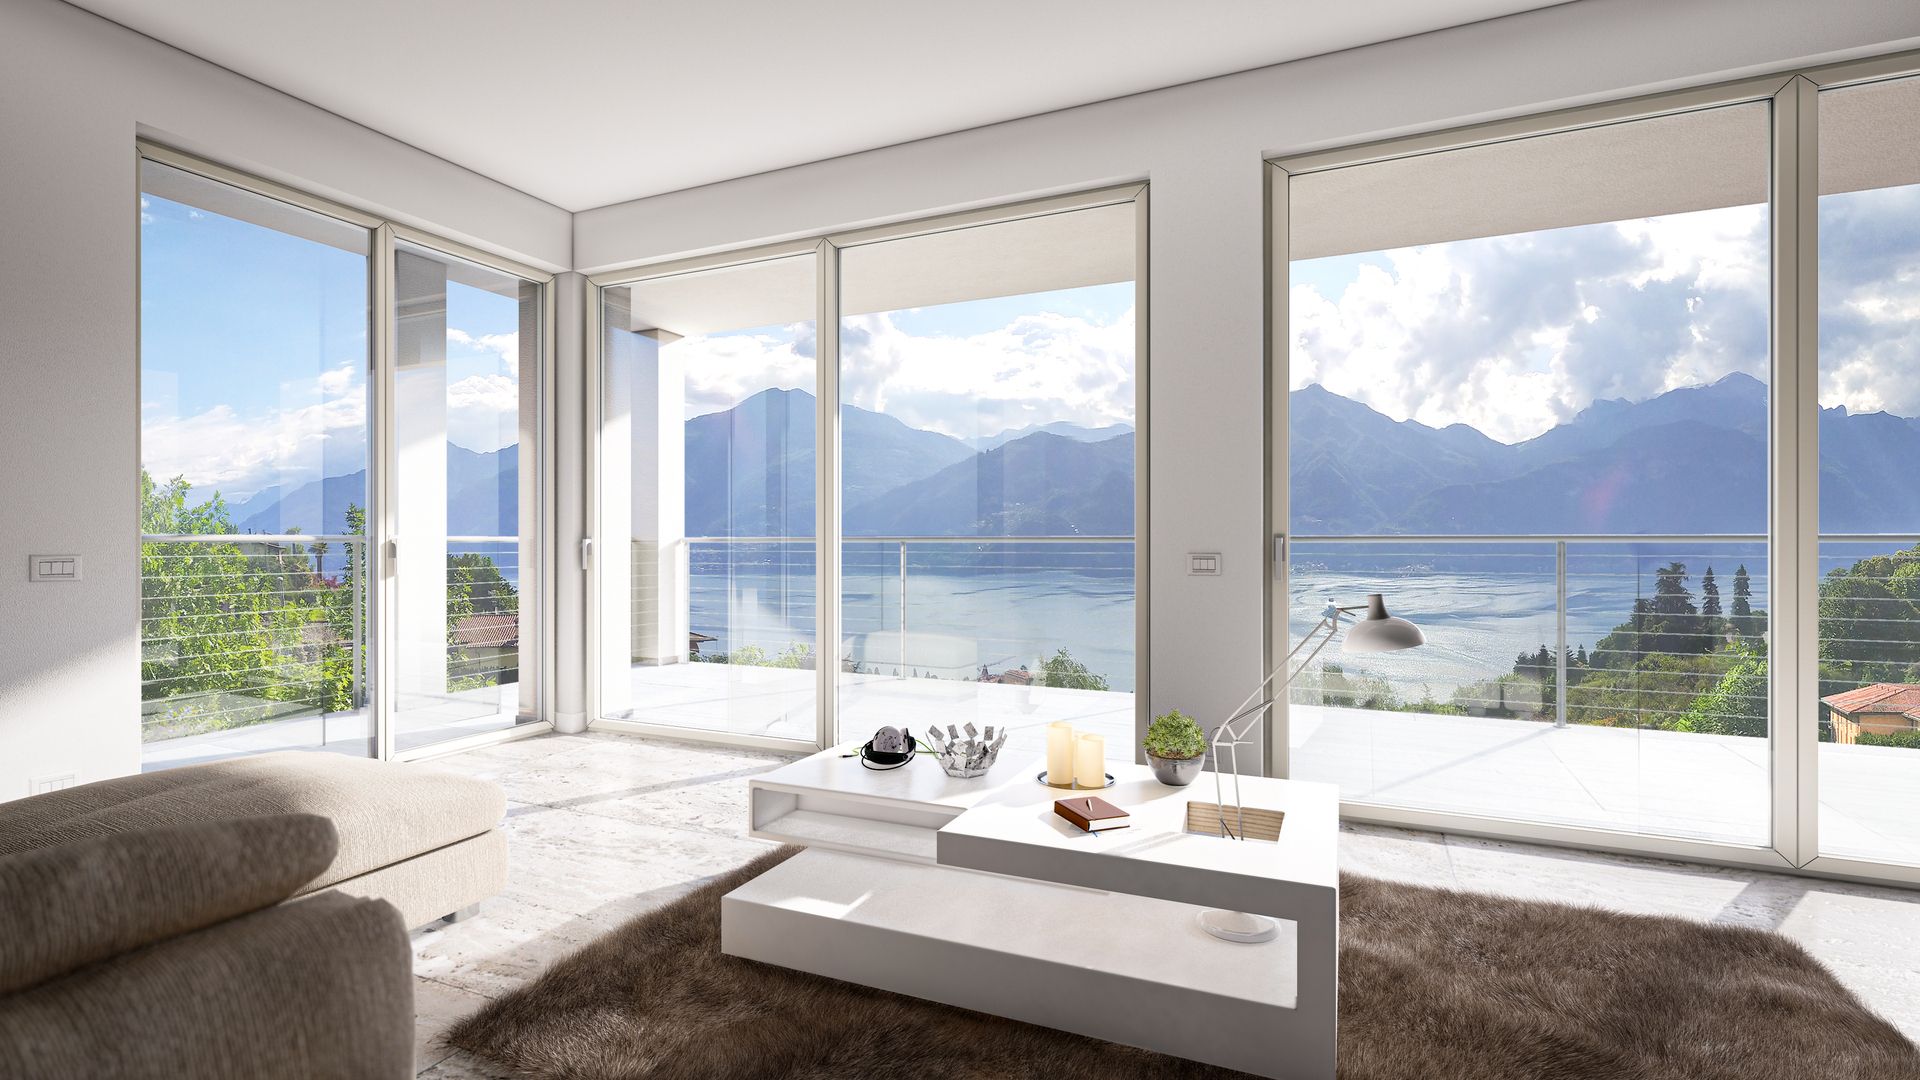 Vendita Appartamento Menaggio Lago di Como | luxforsale.it